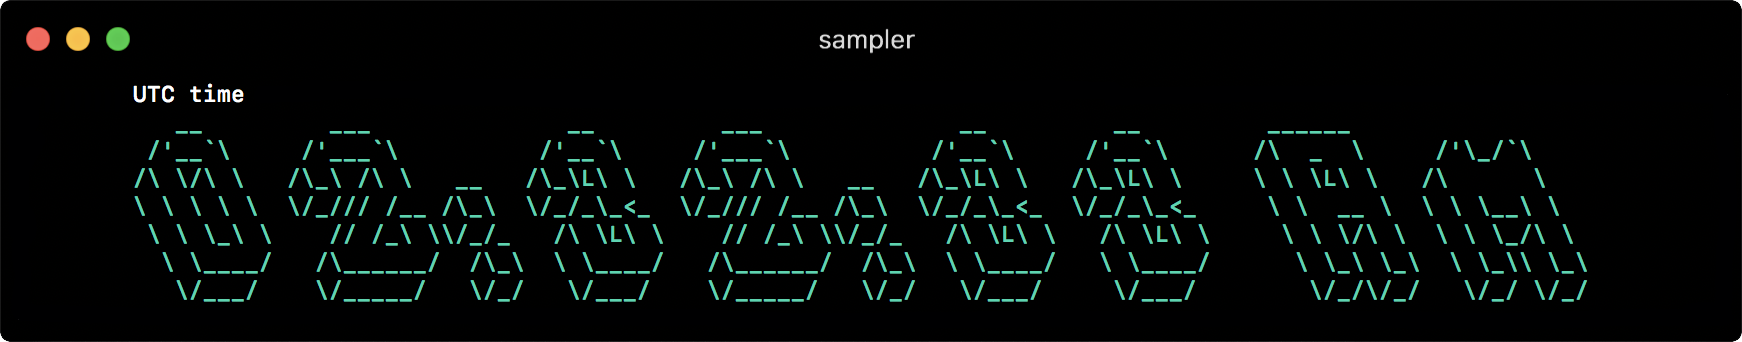 Sampler. Консольная утилита для визуализации результата любых shell команд - 7